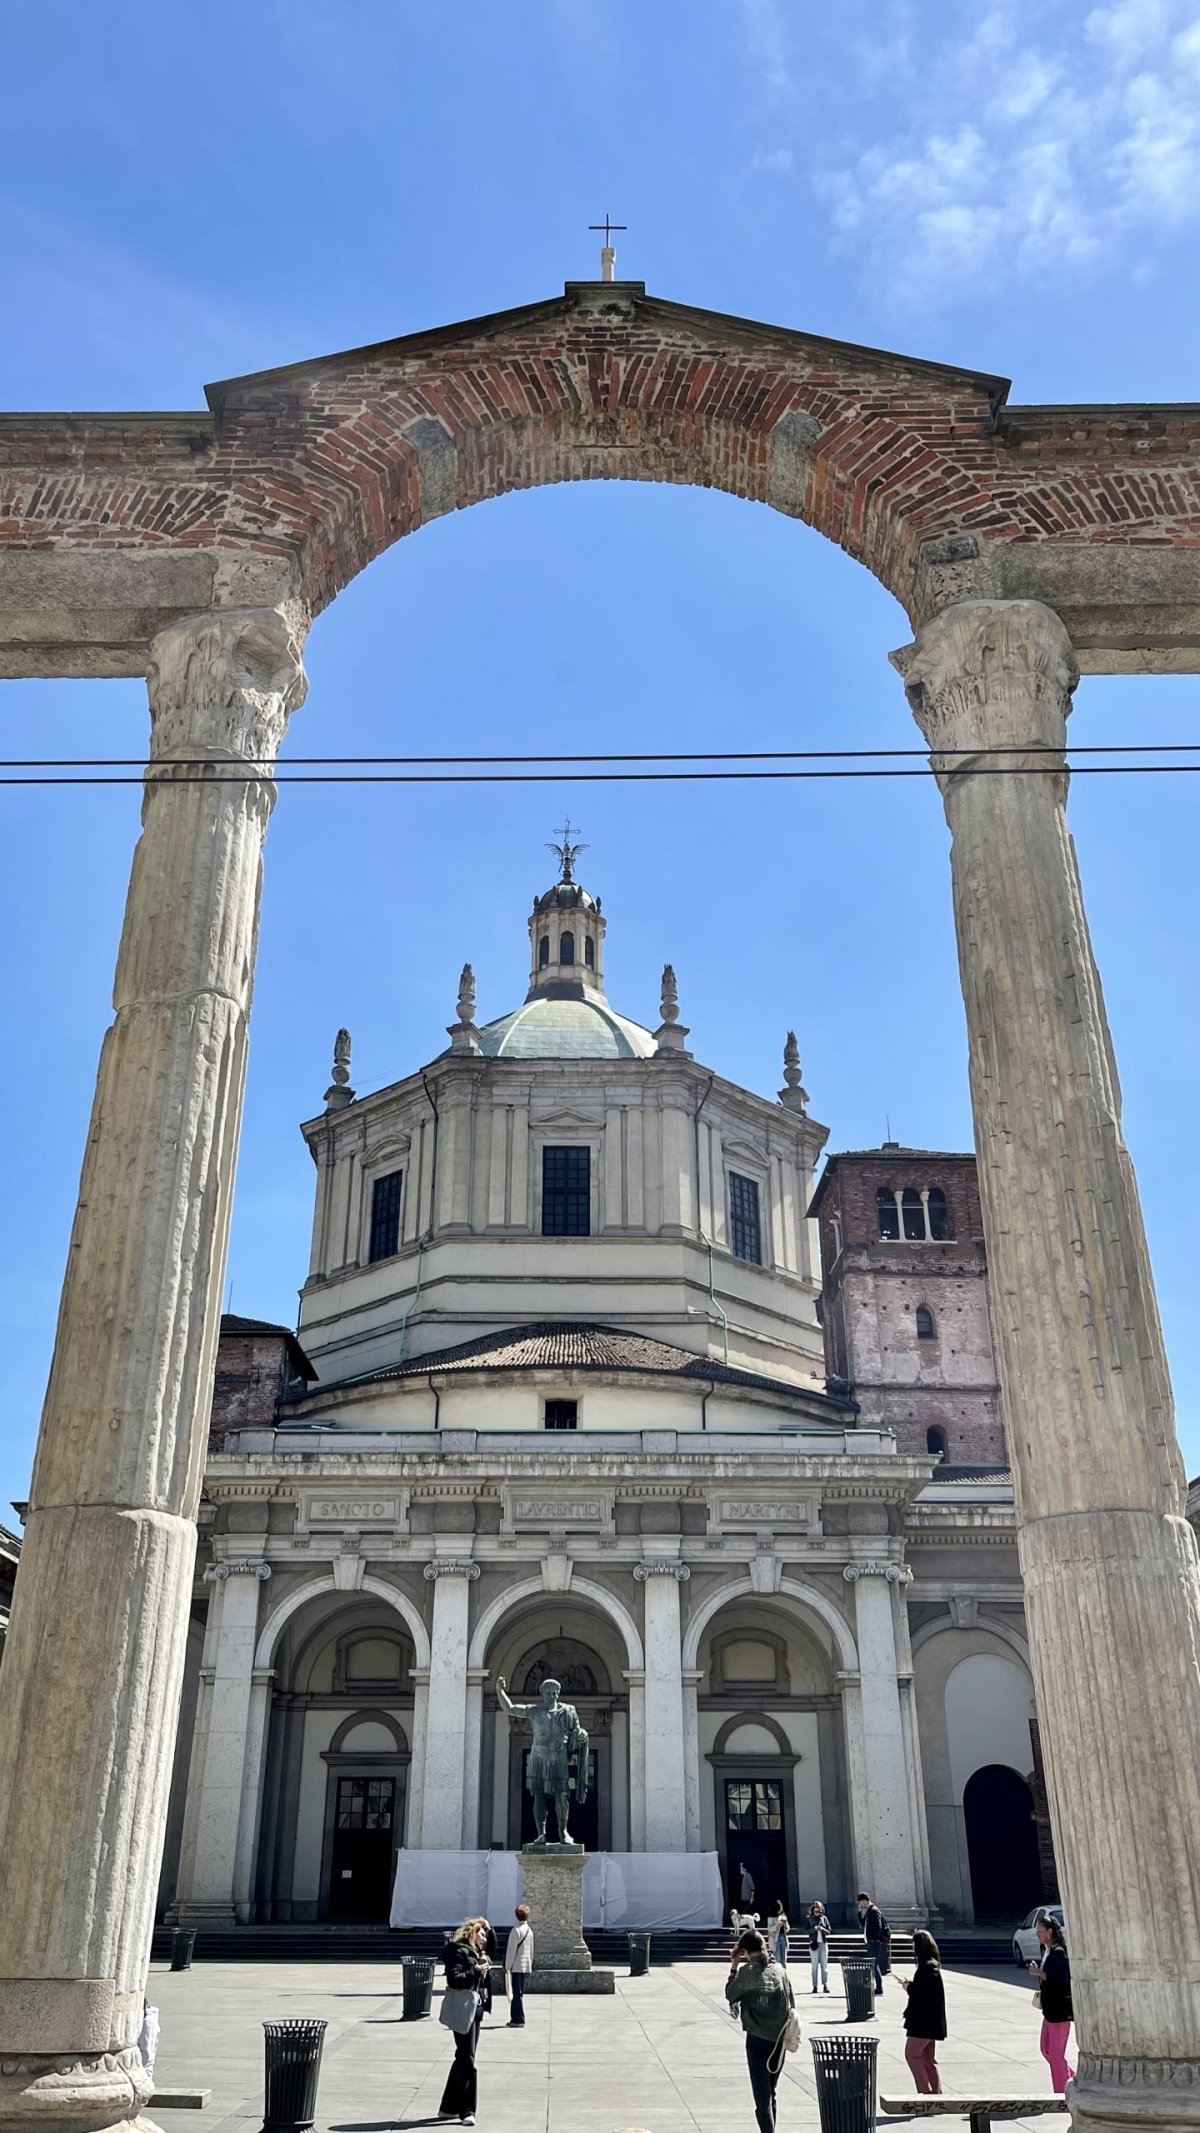 Basilica of San Lorenzo Maggiore